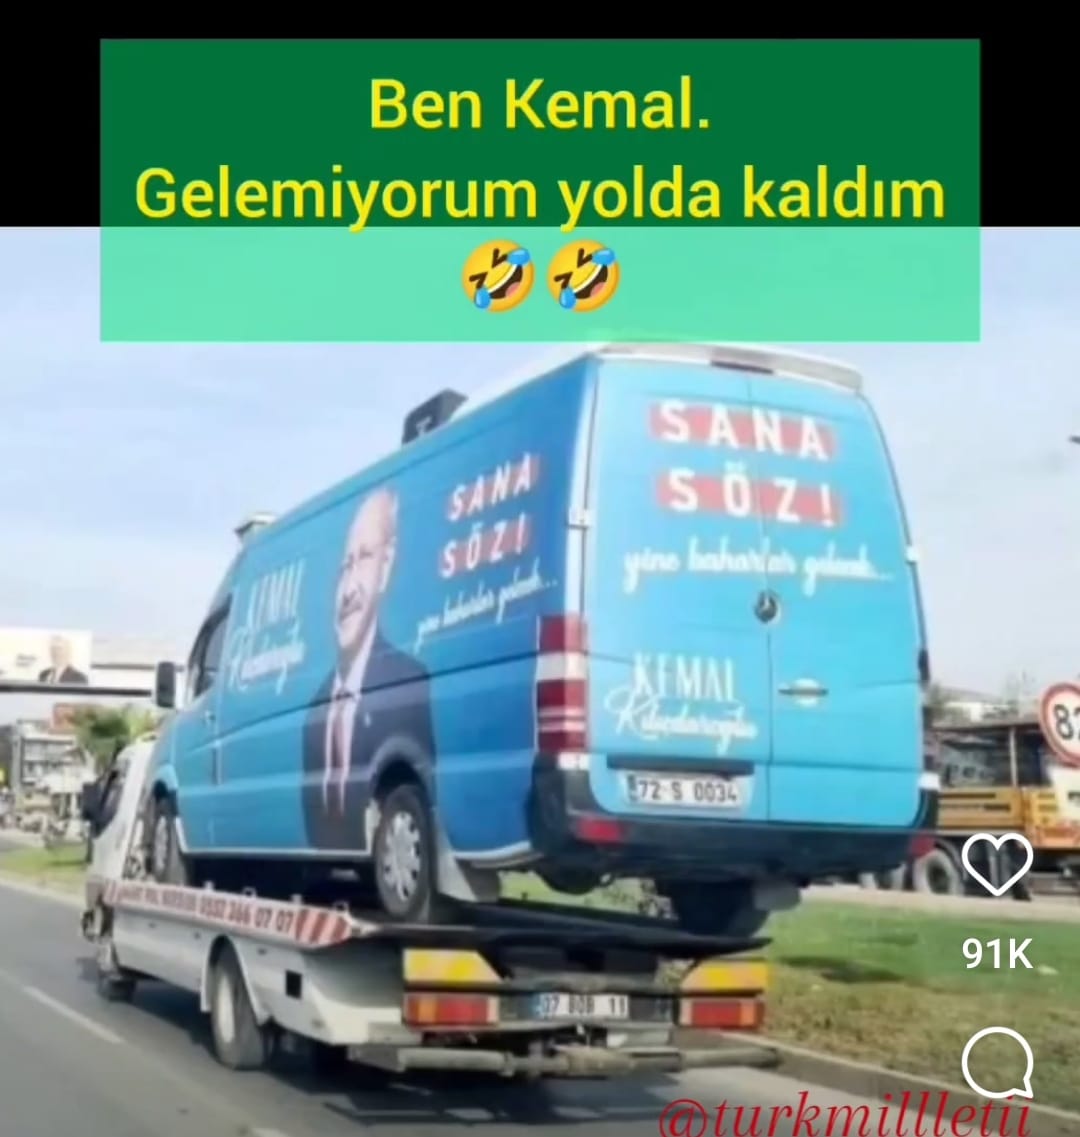 Ben Kemal gelemiyorum😪😇🤔🥺
Erdoğan 2 değil 22 seçim de yapsa alayını silkeler
Sera Kadıgil
Emin Çapa
#KılıcdaroğluCumhurbaskanı olamadı
ADAM KAZANDI